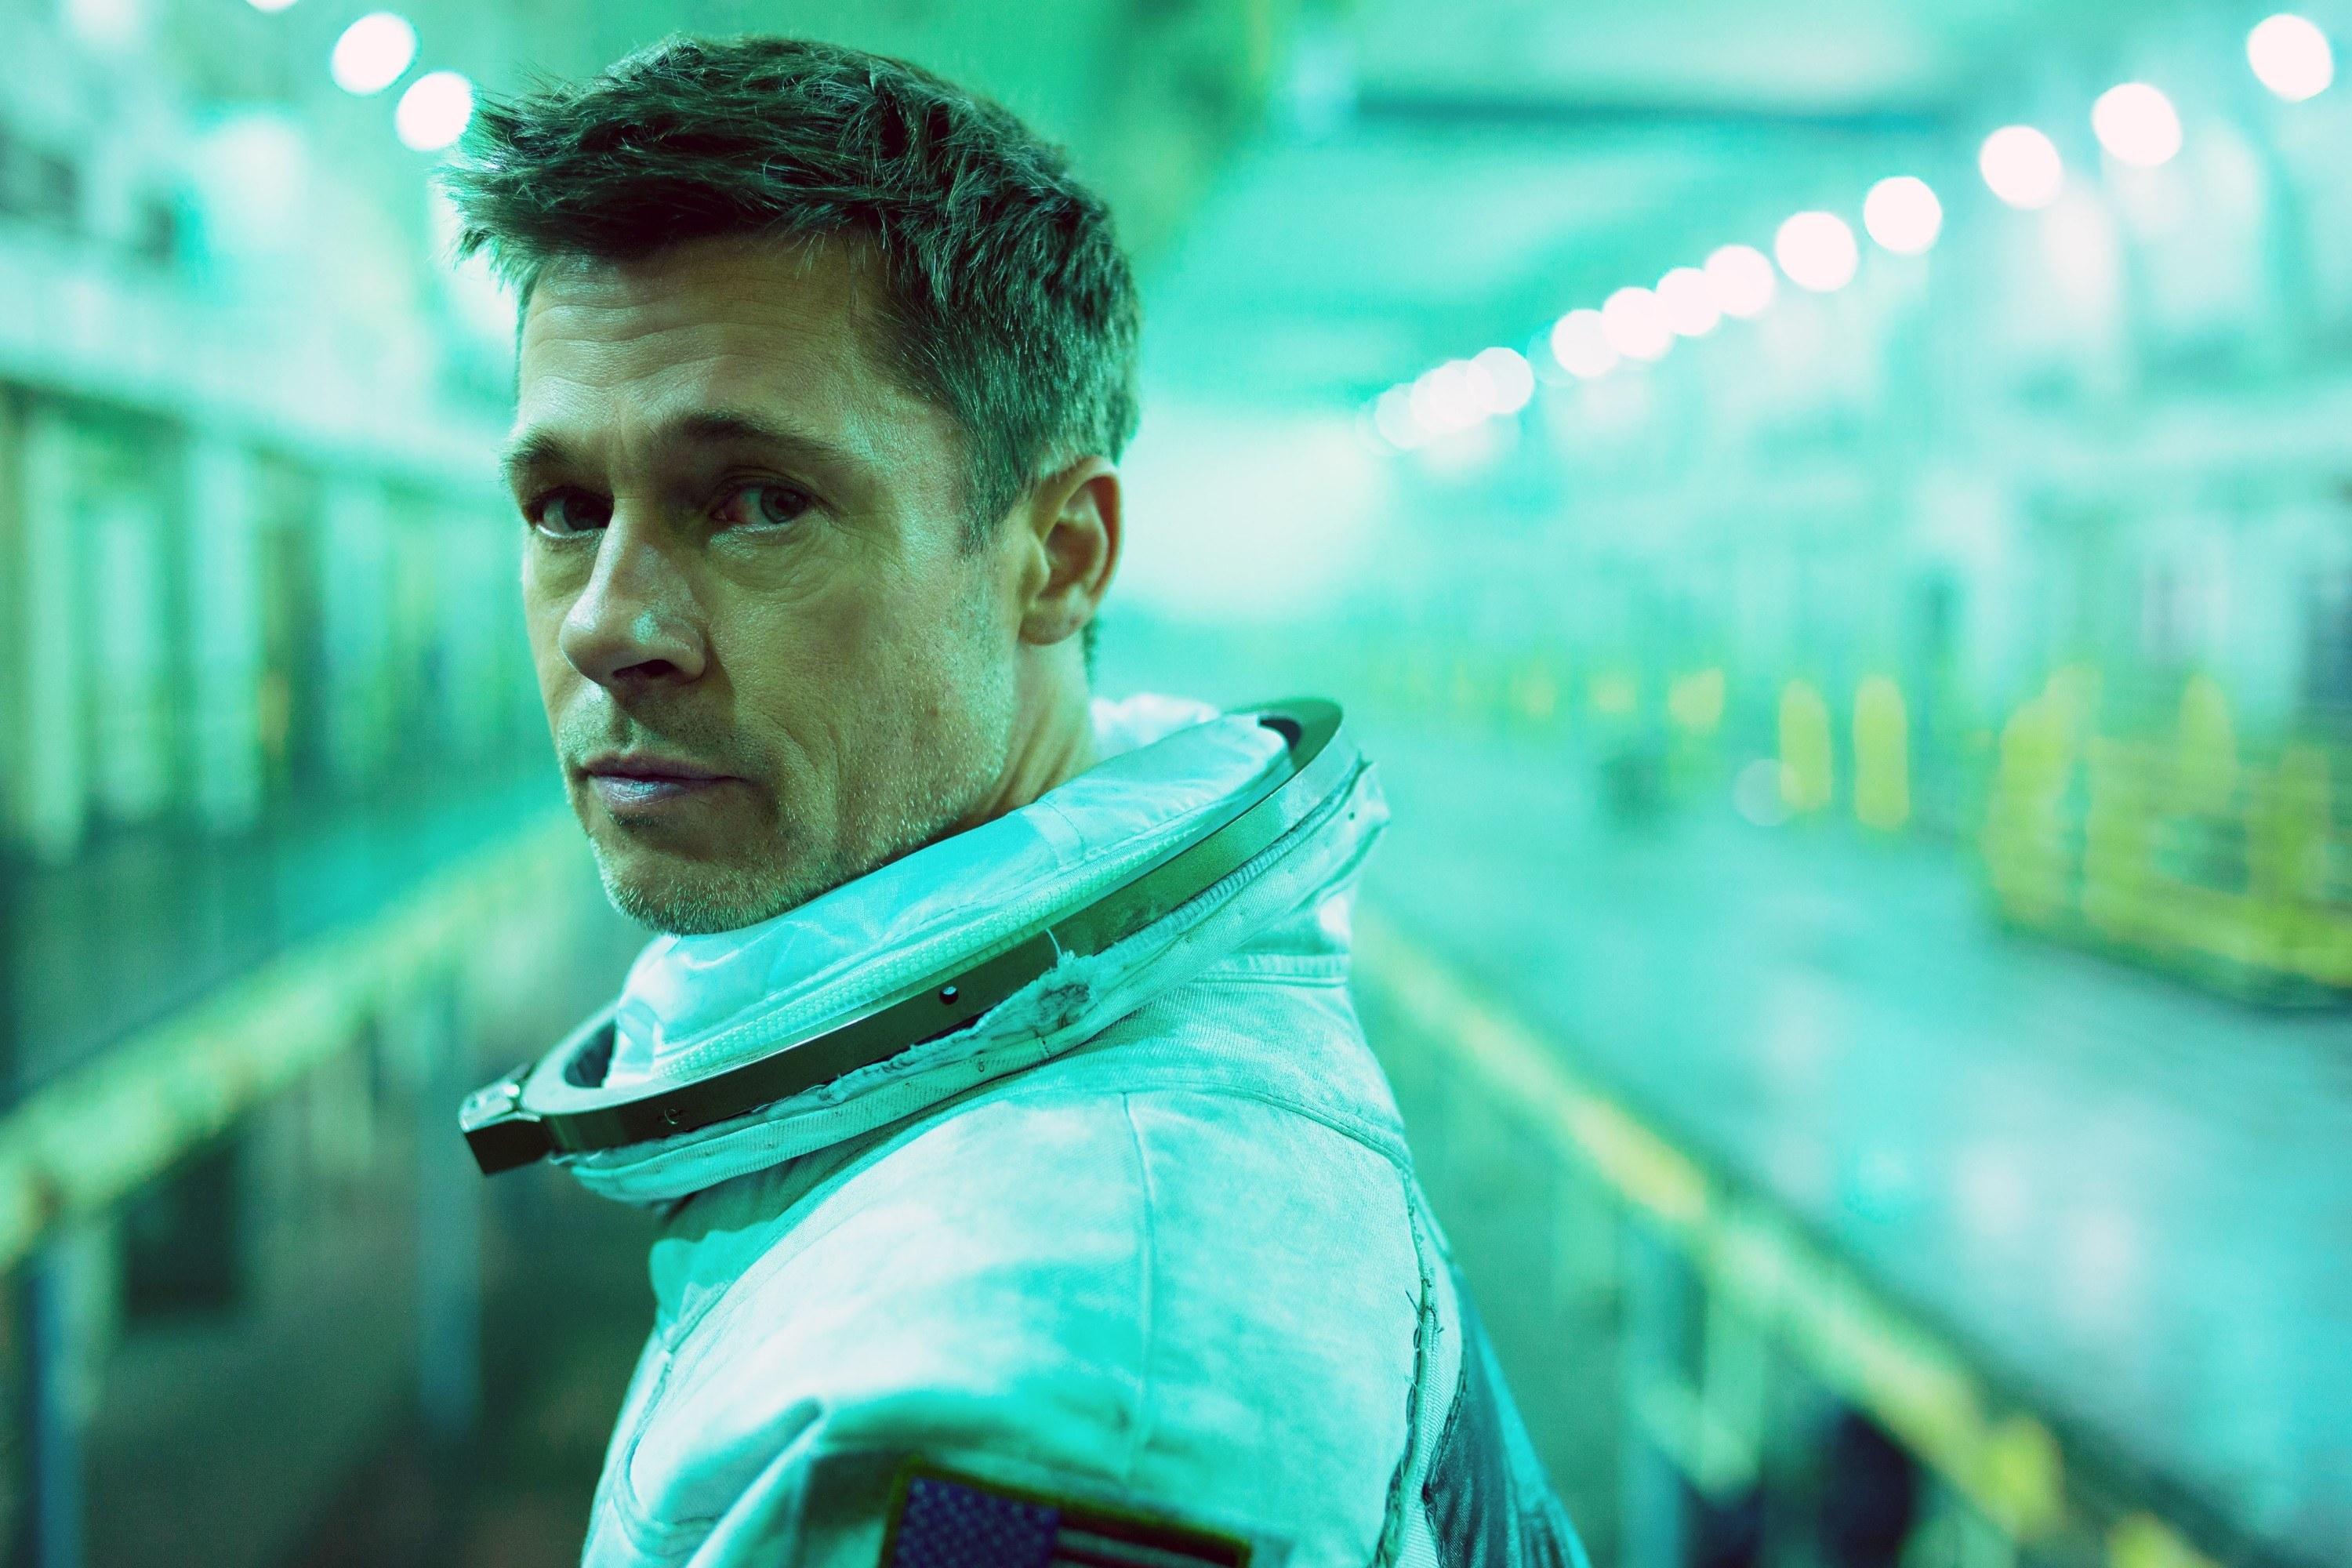 Brad Pitt stands in an astronaut uniform